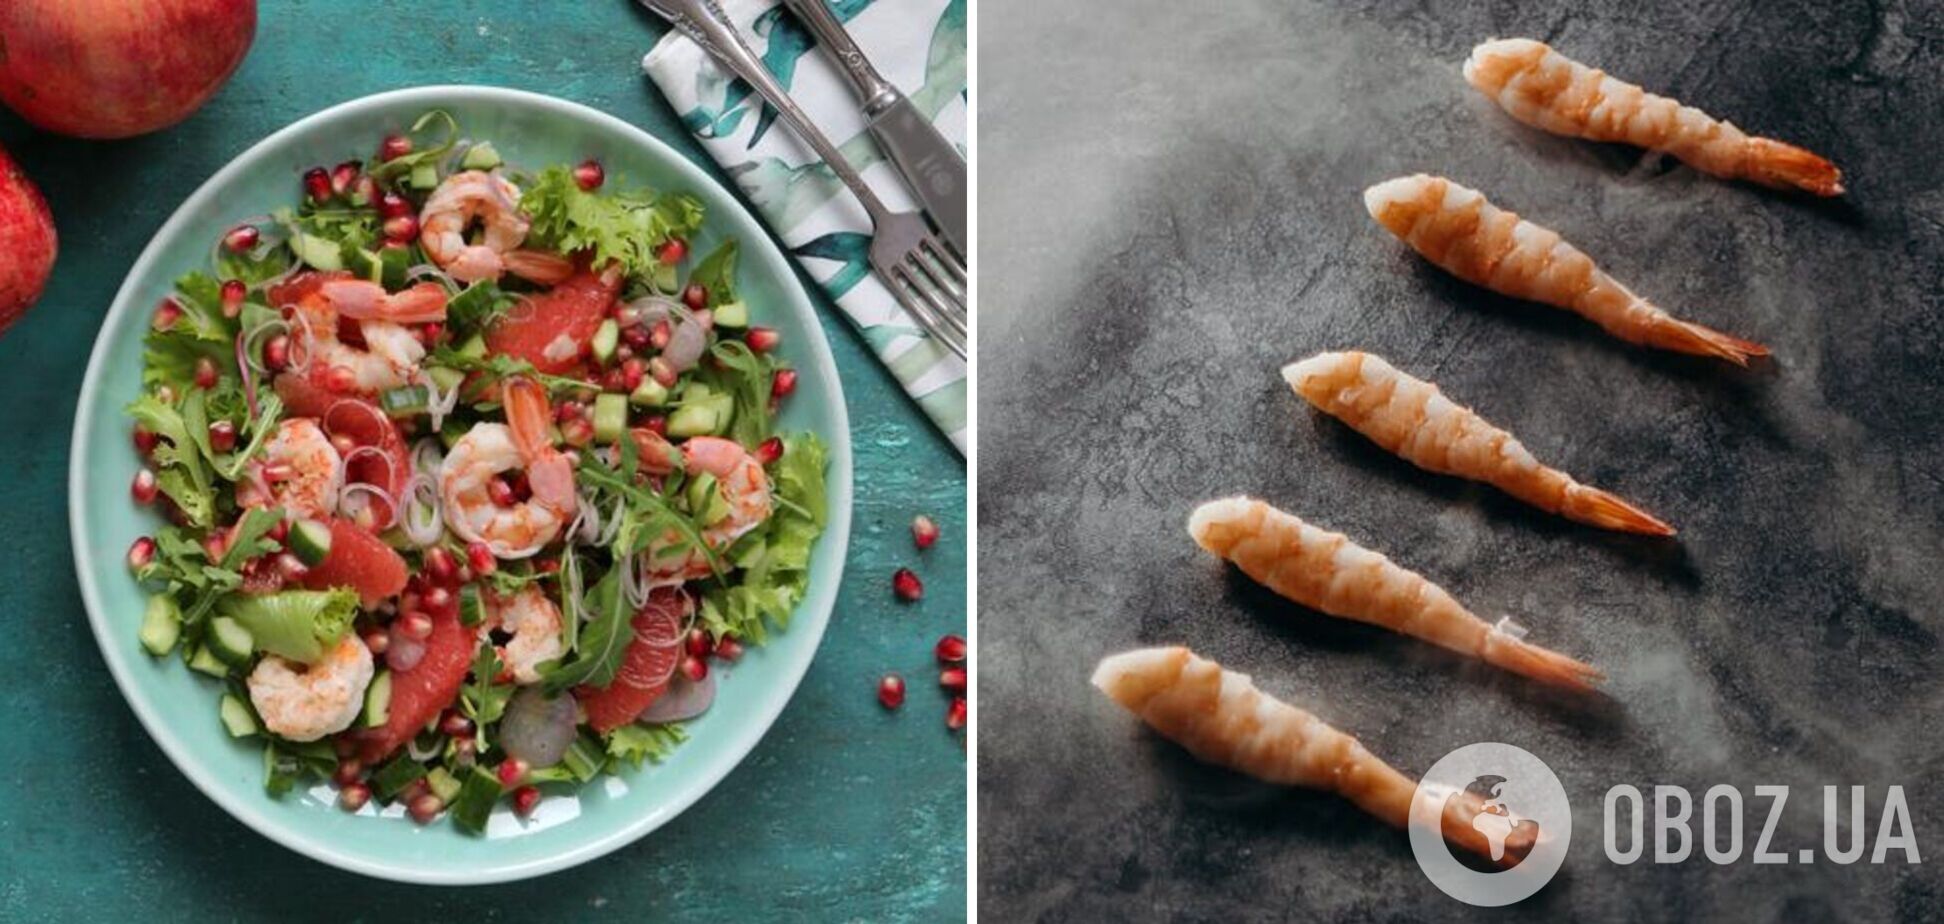 Із чим смачно поєднати креветки в салаті: ідея від шеф-кухарки